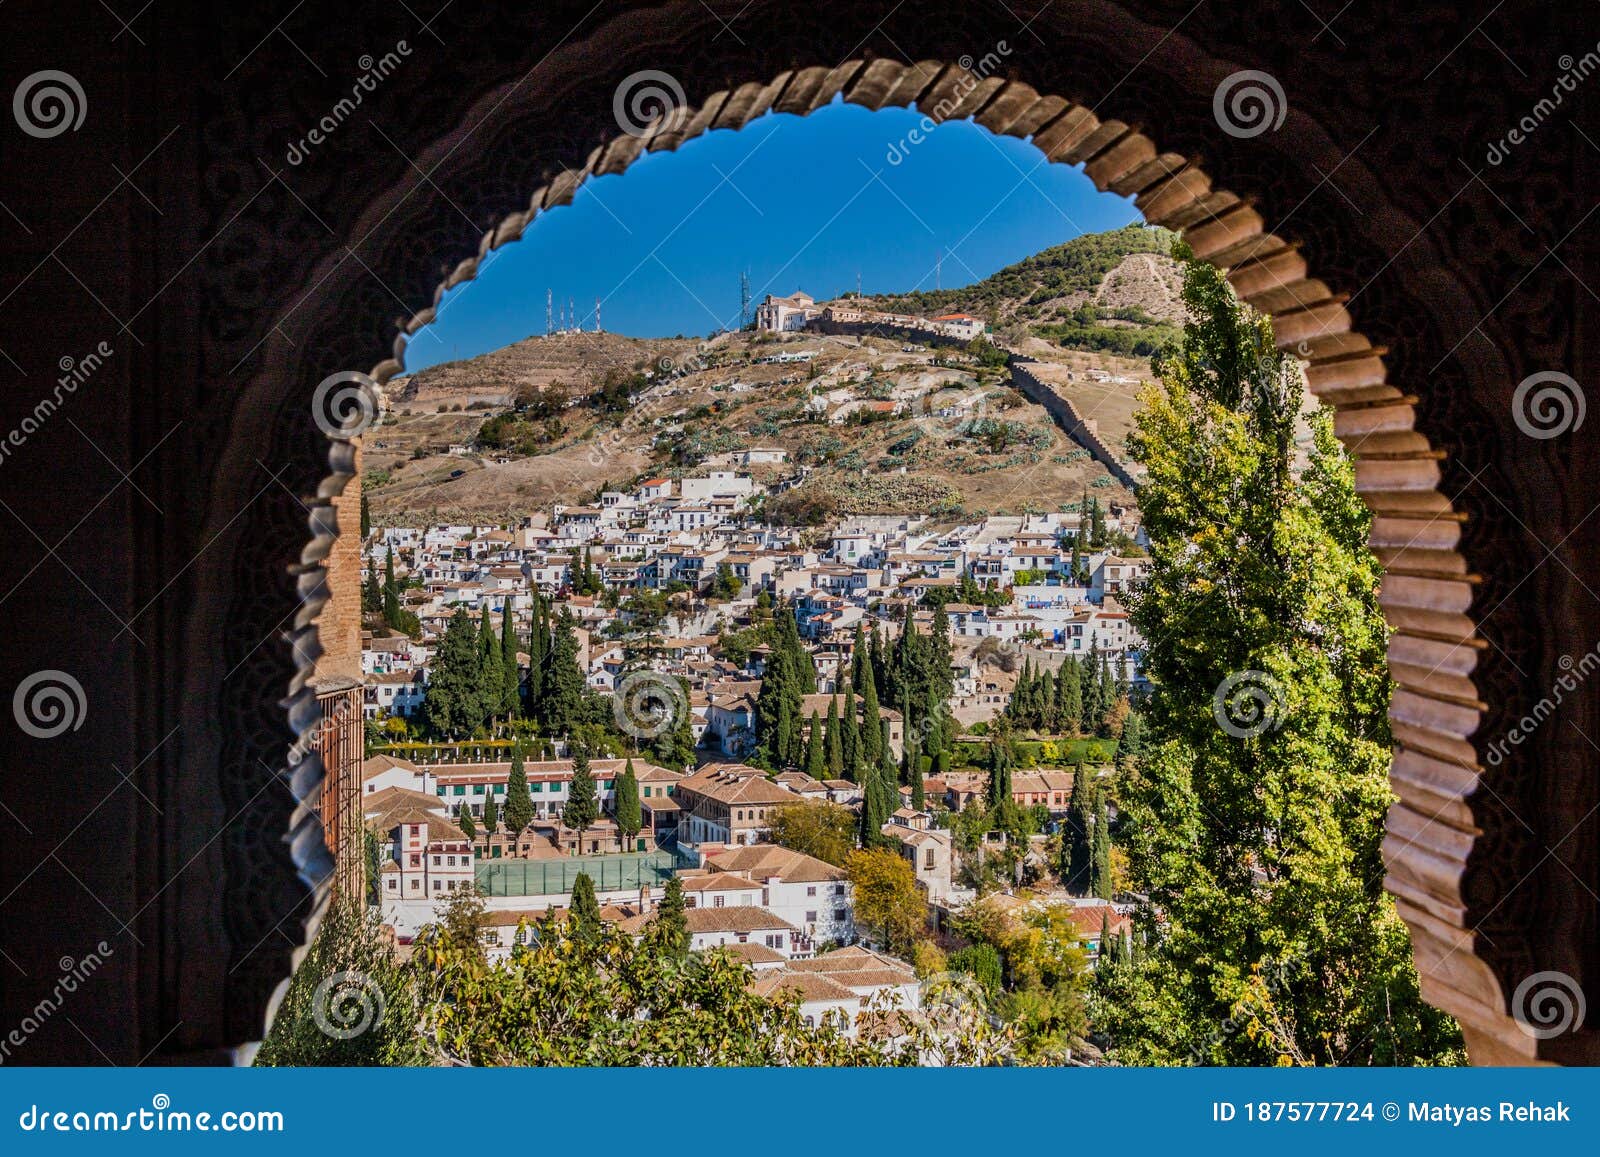 view from nasrid palaces (palacios nazaries) at alhambra in granada, spa